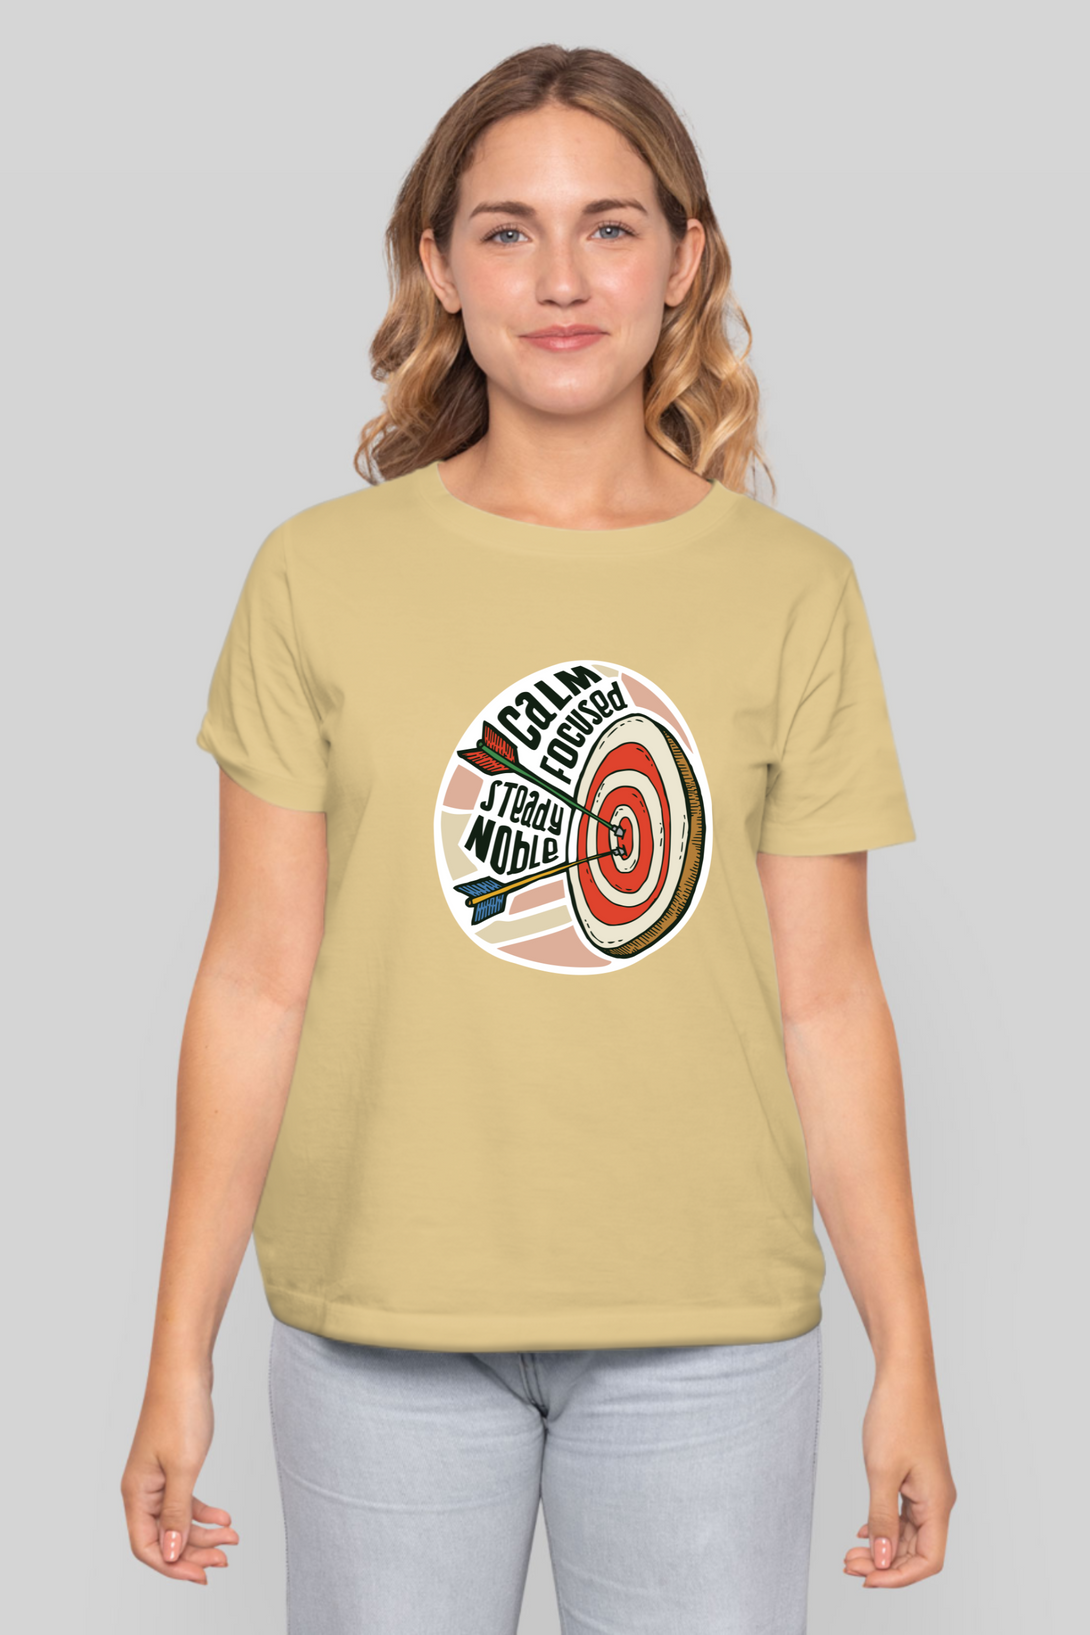 Bullseye Printed T-Shirt For Women - WowWaves - 12